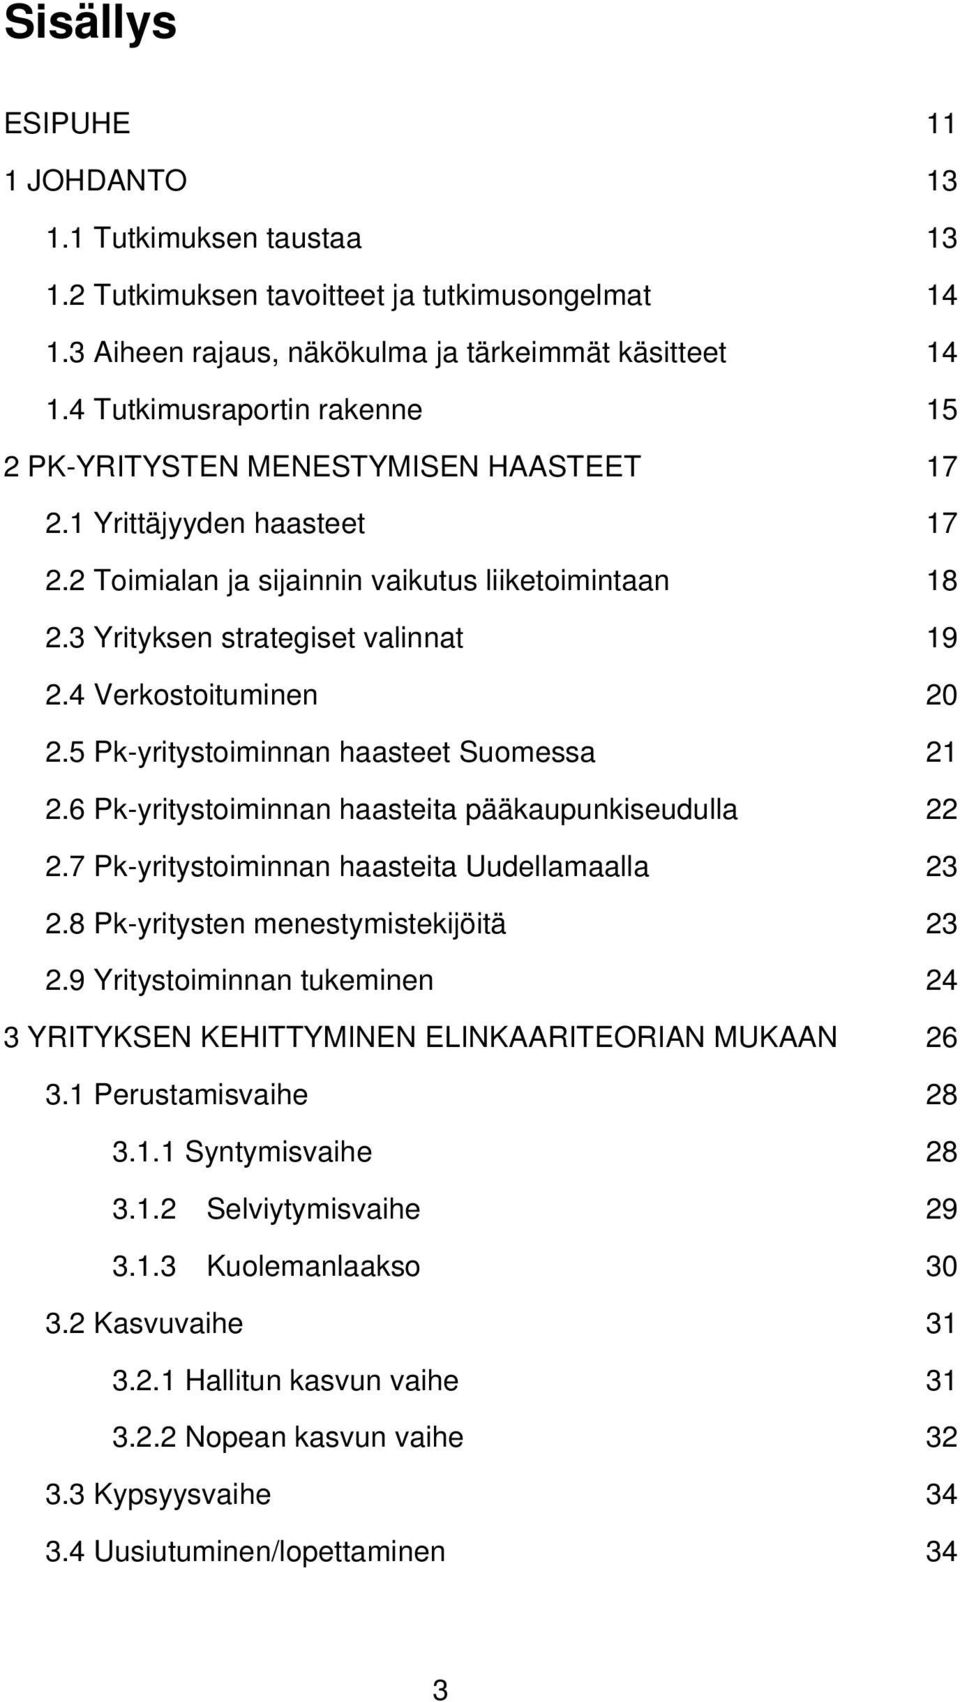 4 Verkostoituminen 20 2.5 Pk-yritystoiminnan haasteet Suomessa 21 2.6 Pk-yritystoiminnan haasteita pääkaupunkiseudulla 22 2.7 Pk-yritystoiminnan haasteita Uudellamaalla 23 2.